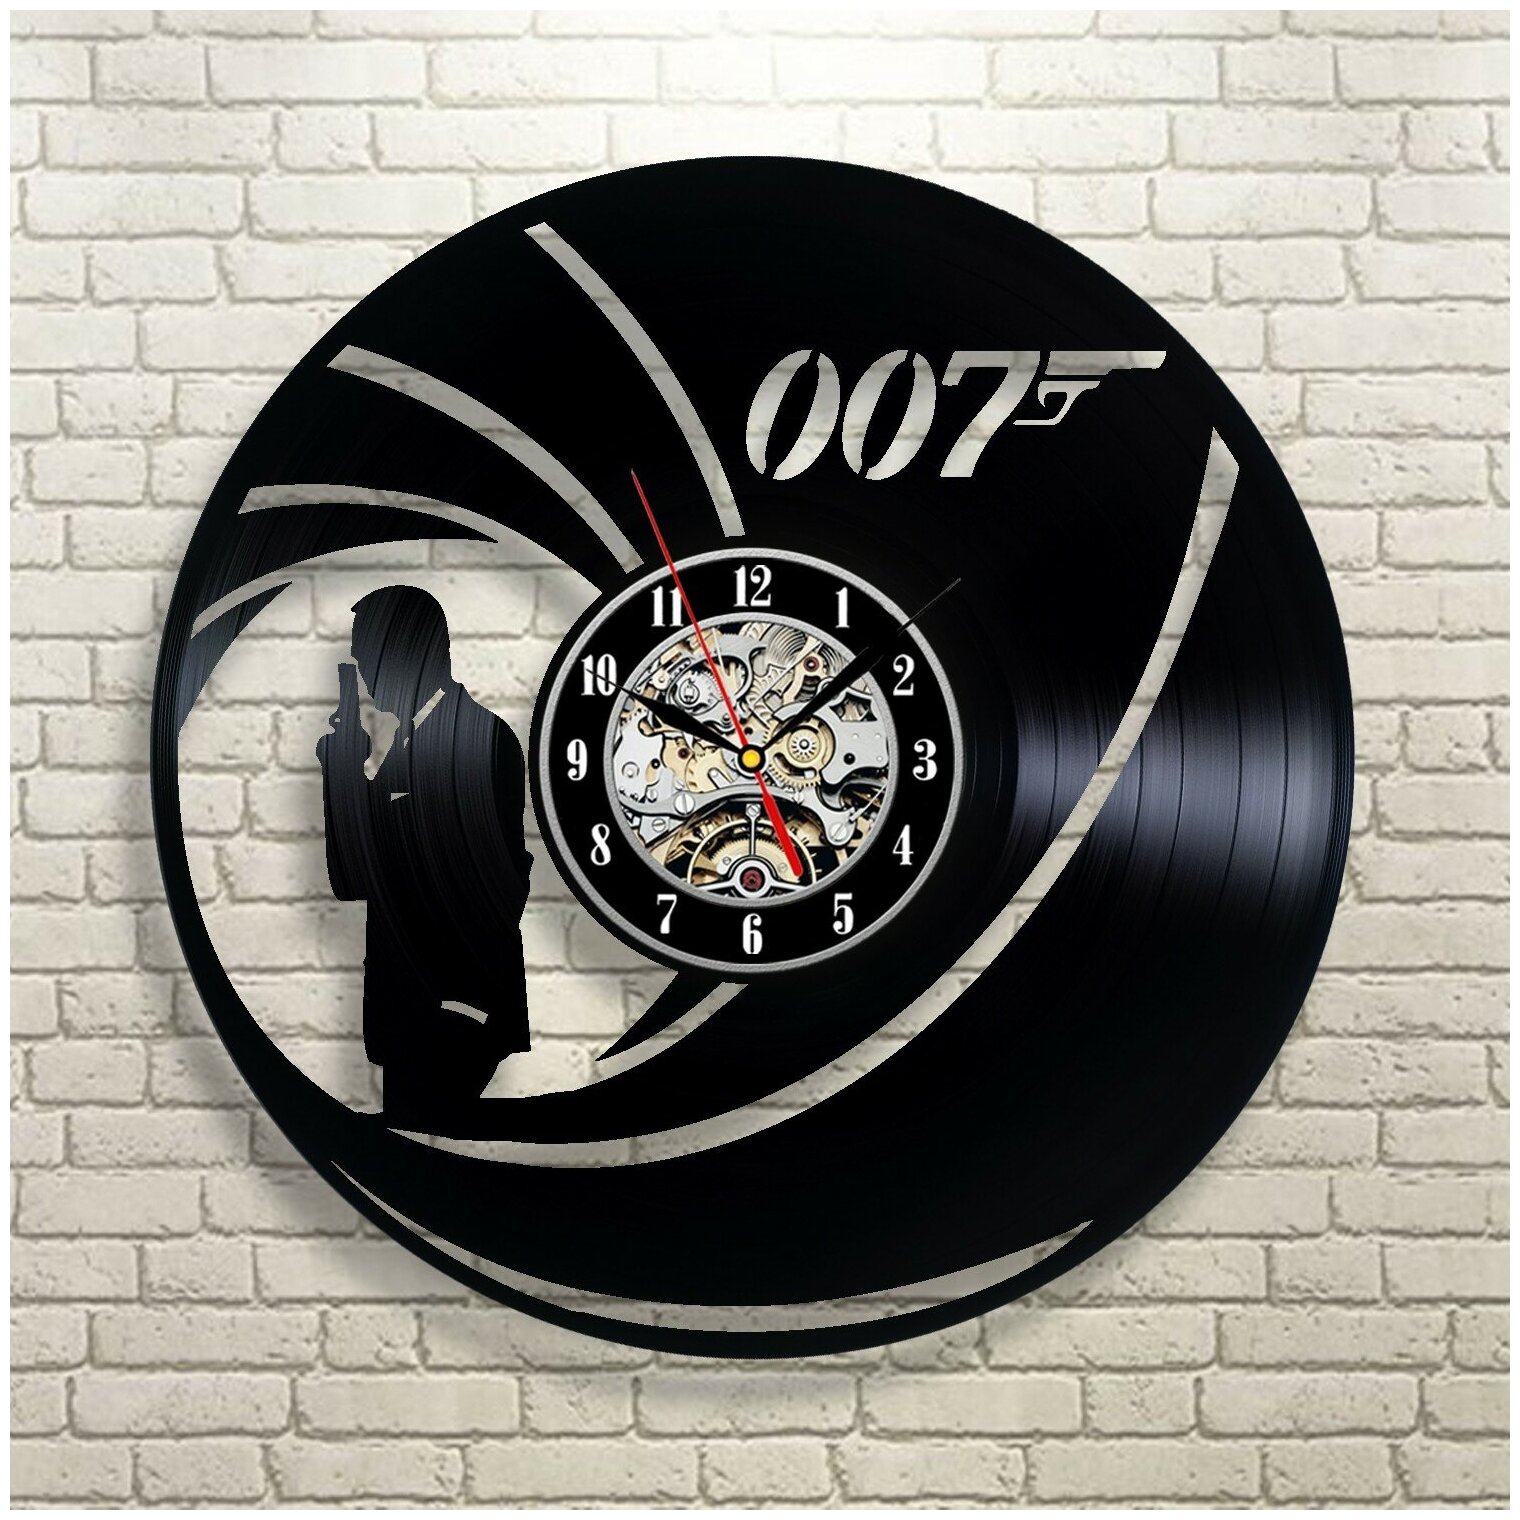 Джеймс Бонд — часы из виниловой пластинки (c) VinylLab